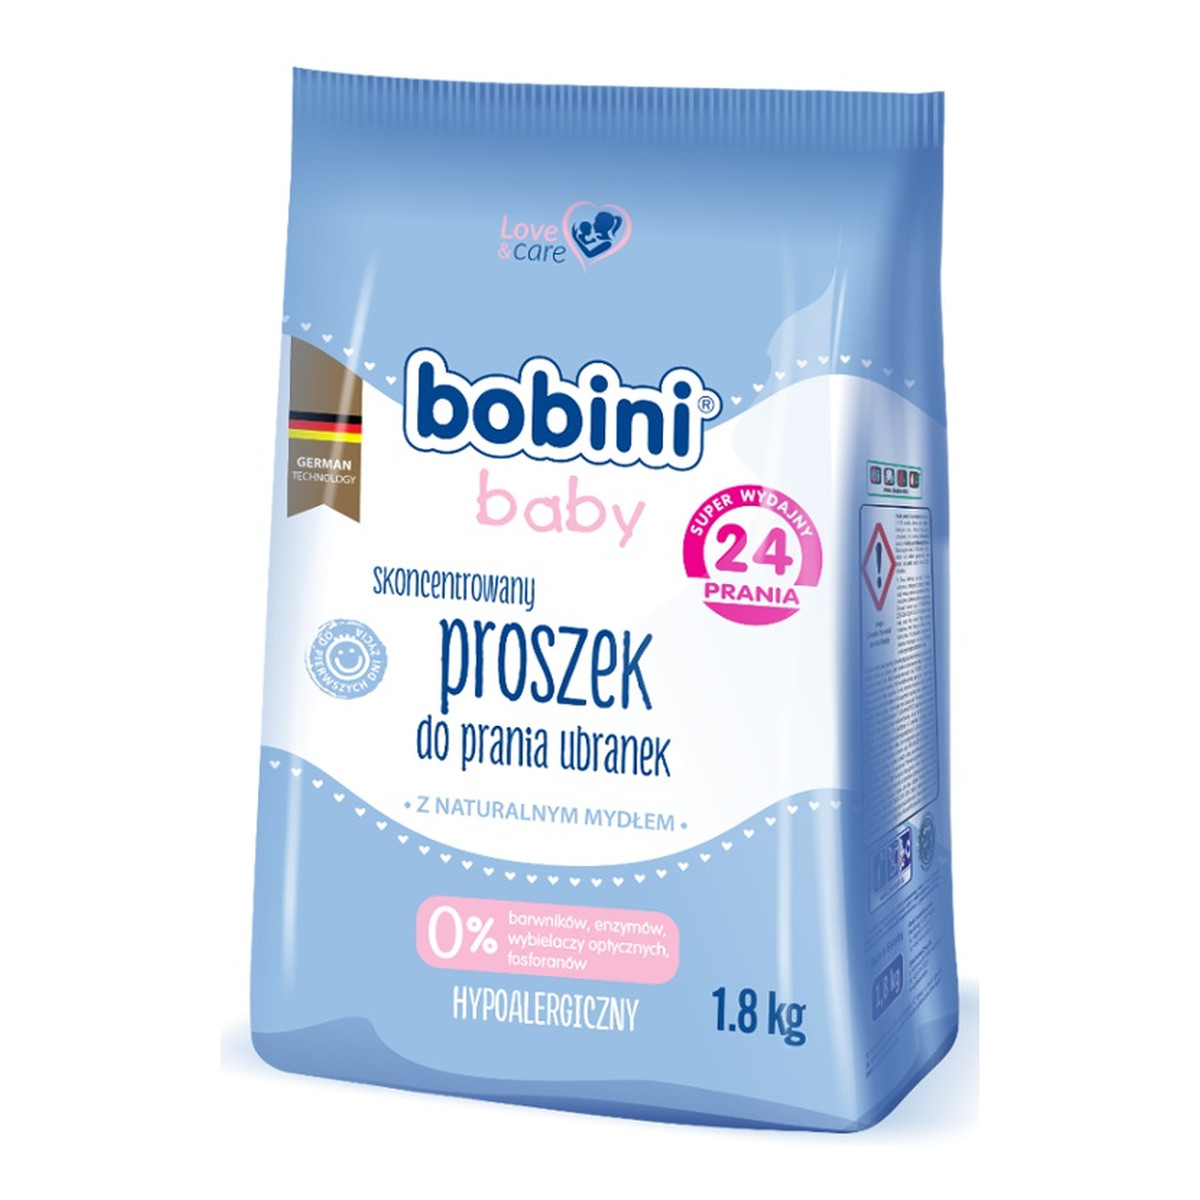 Bobini Baby kgSkoncentrowany proszek do prania ubranek niemowlęcych i dziecięcych Hypoalergiczny 1.8 kg